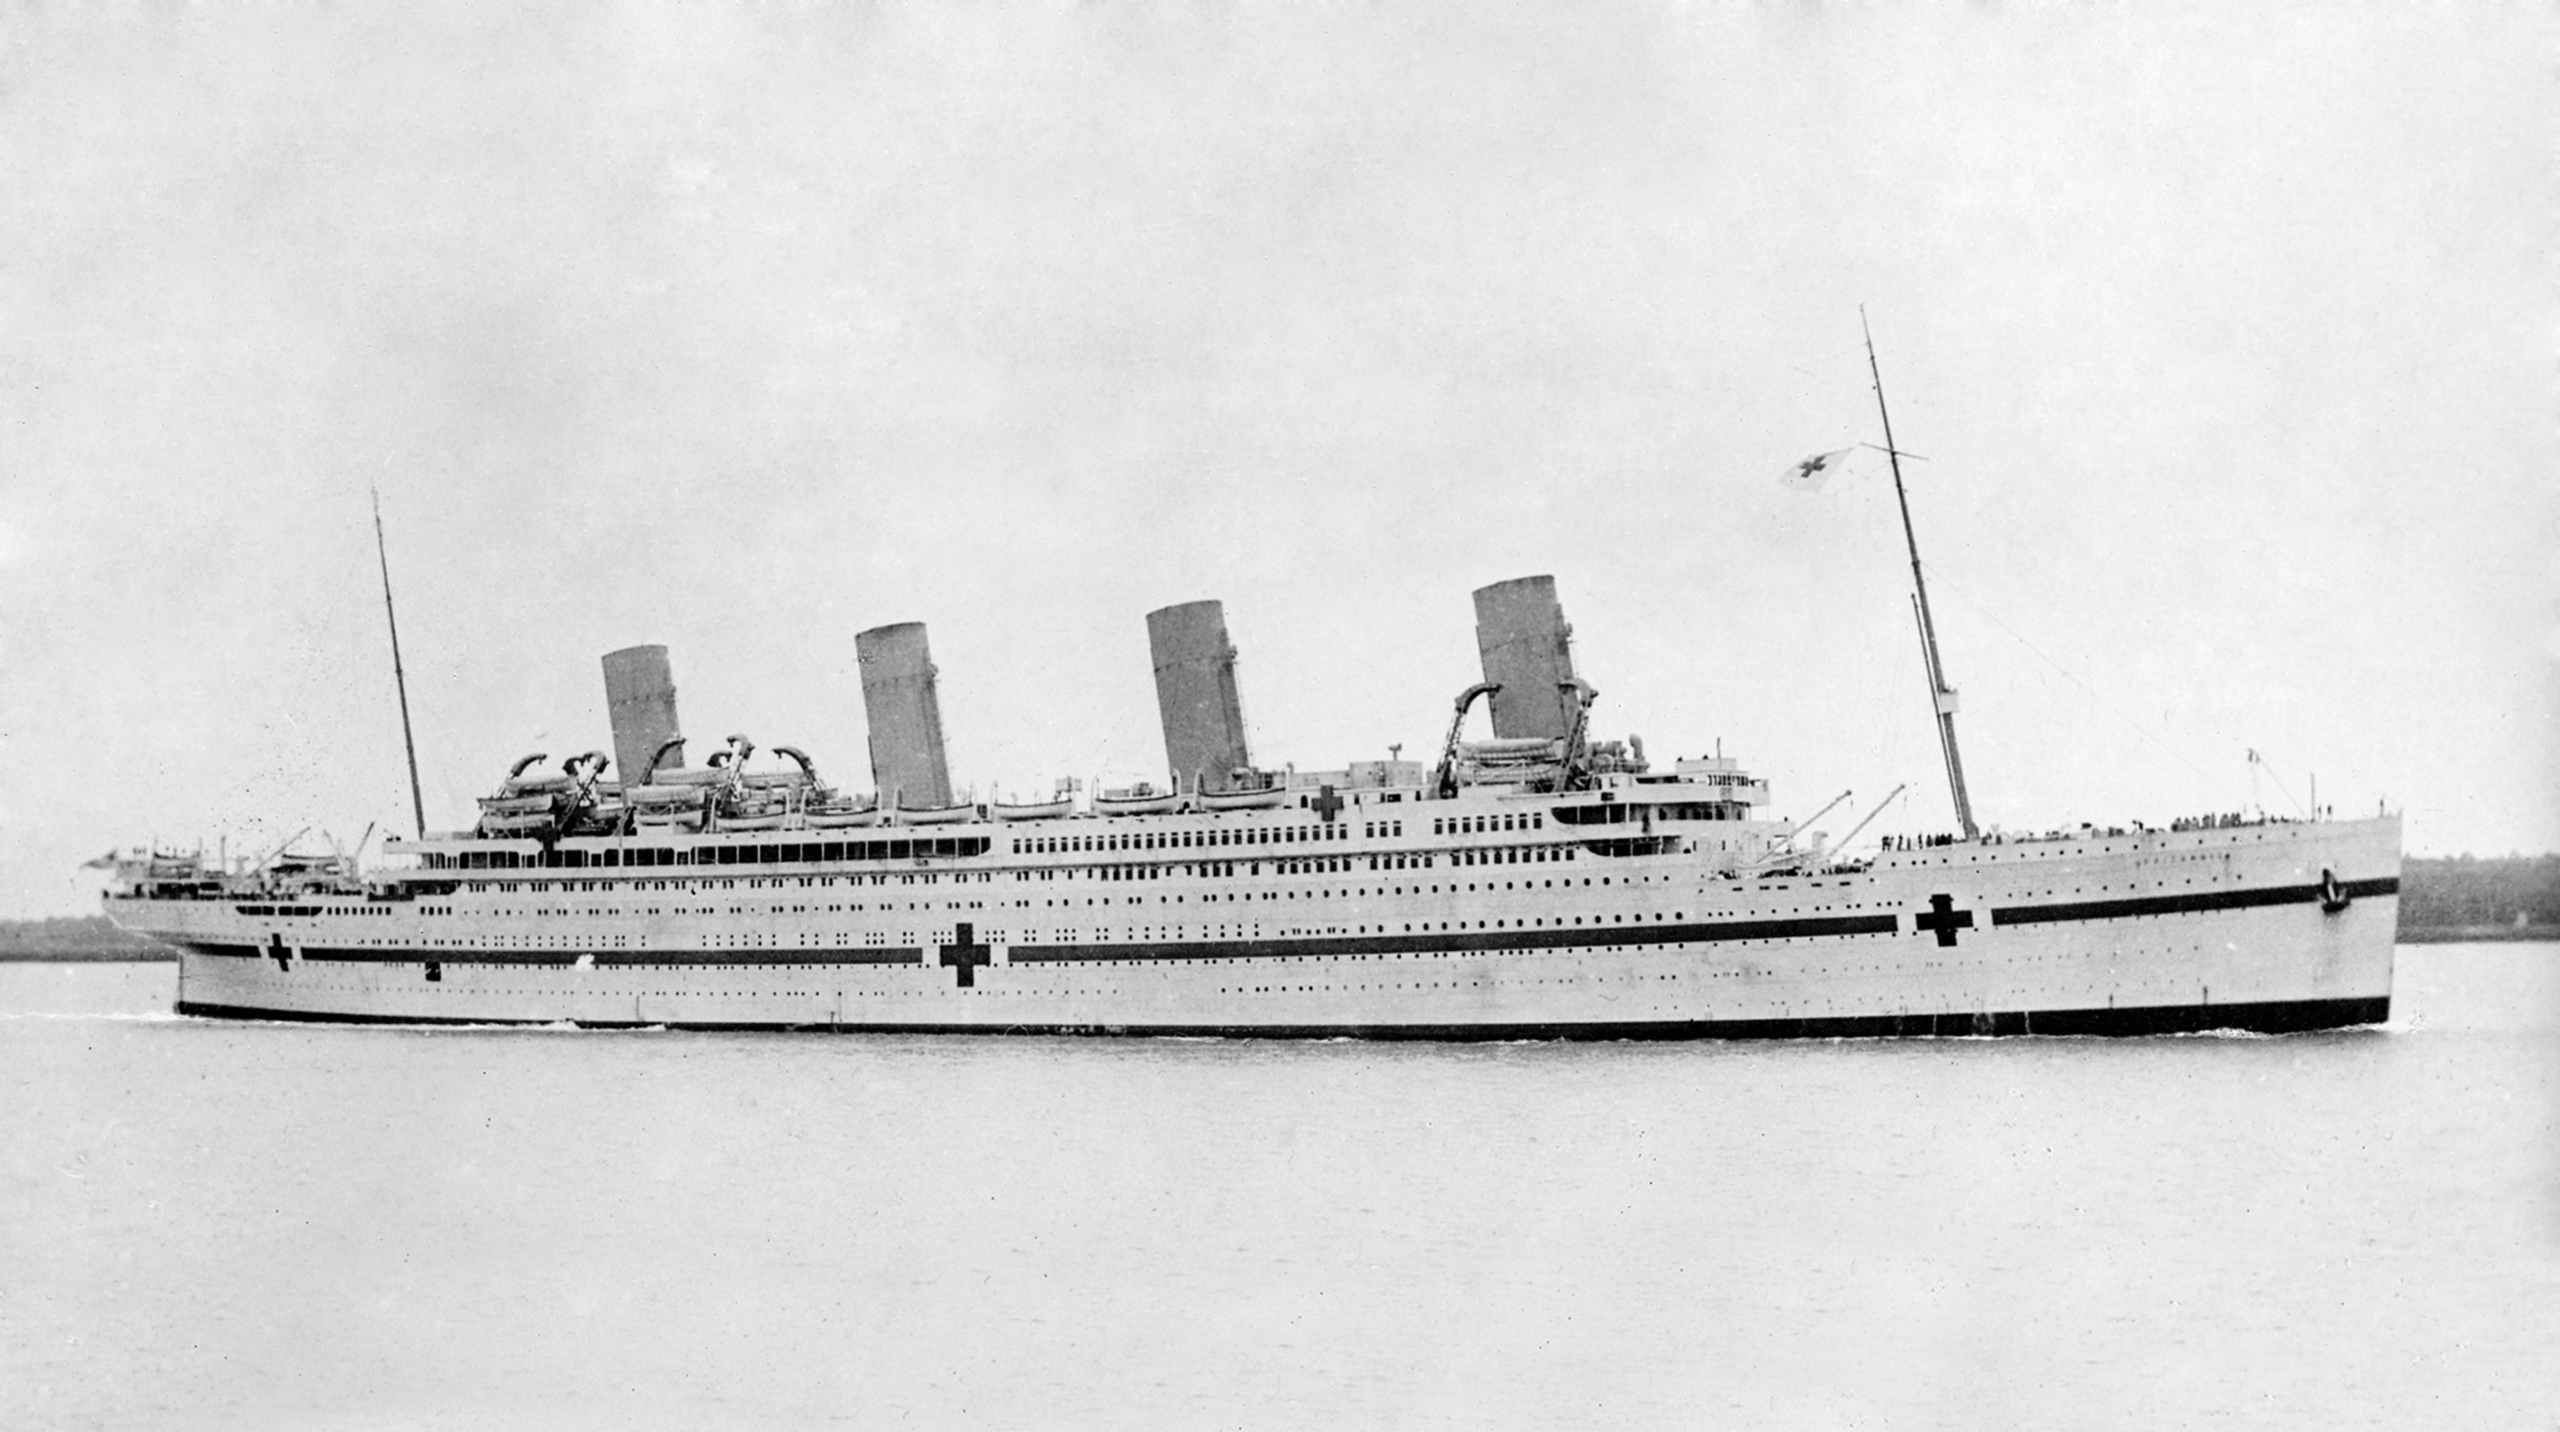 "Miss unsinkable" Violet Jessop - Överlevande från Titanic, Olympiska och Britanniska skeppsvrak 2